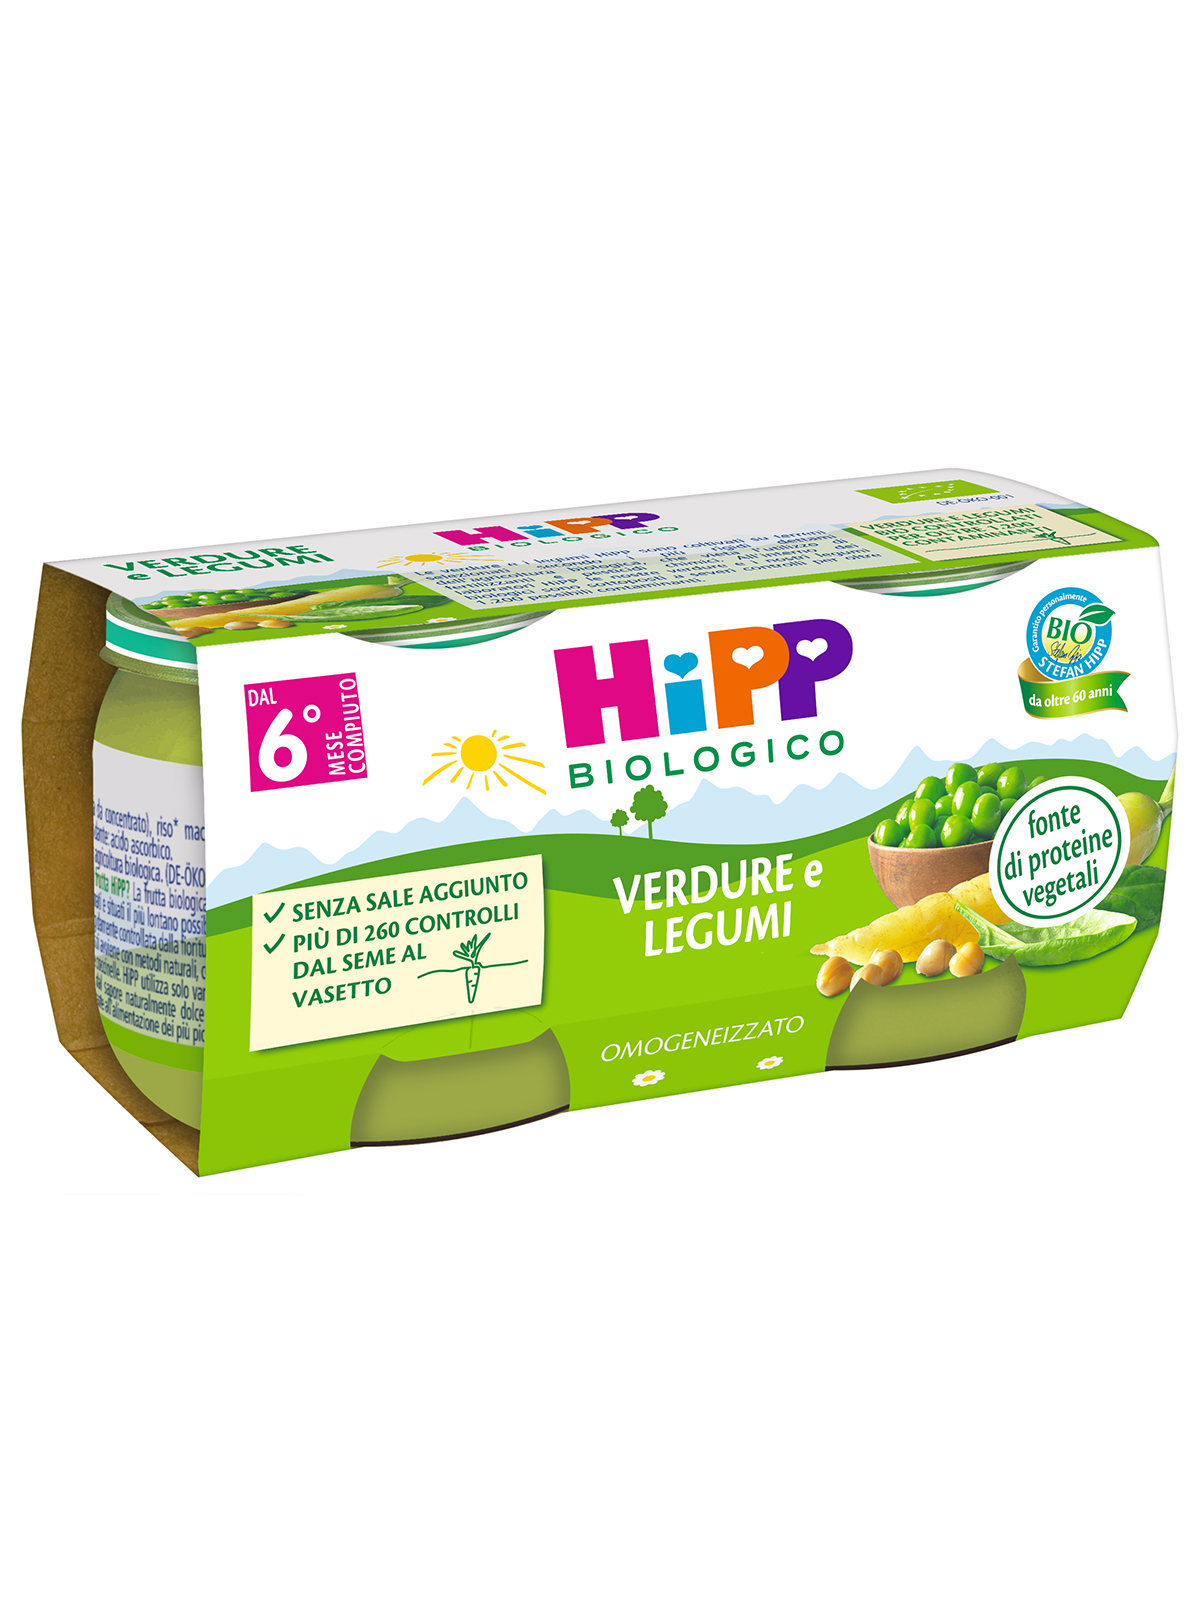 HIPP - Omogeneizzato Verdure e Legumi 2x80g - Bimbostore